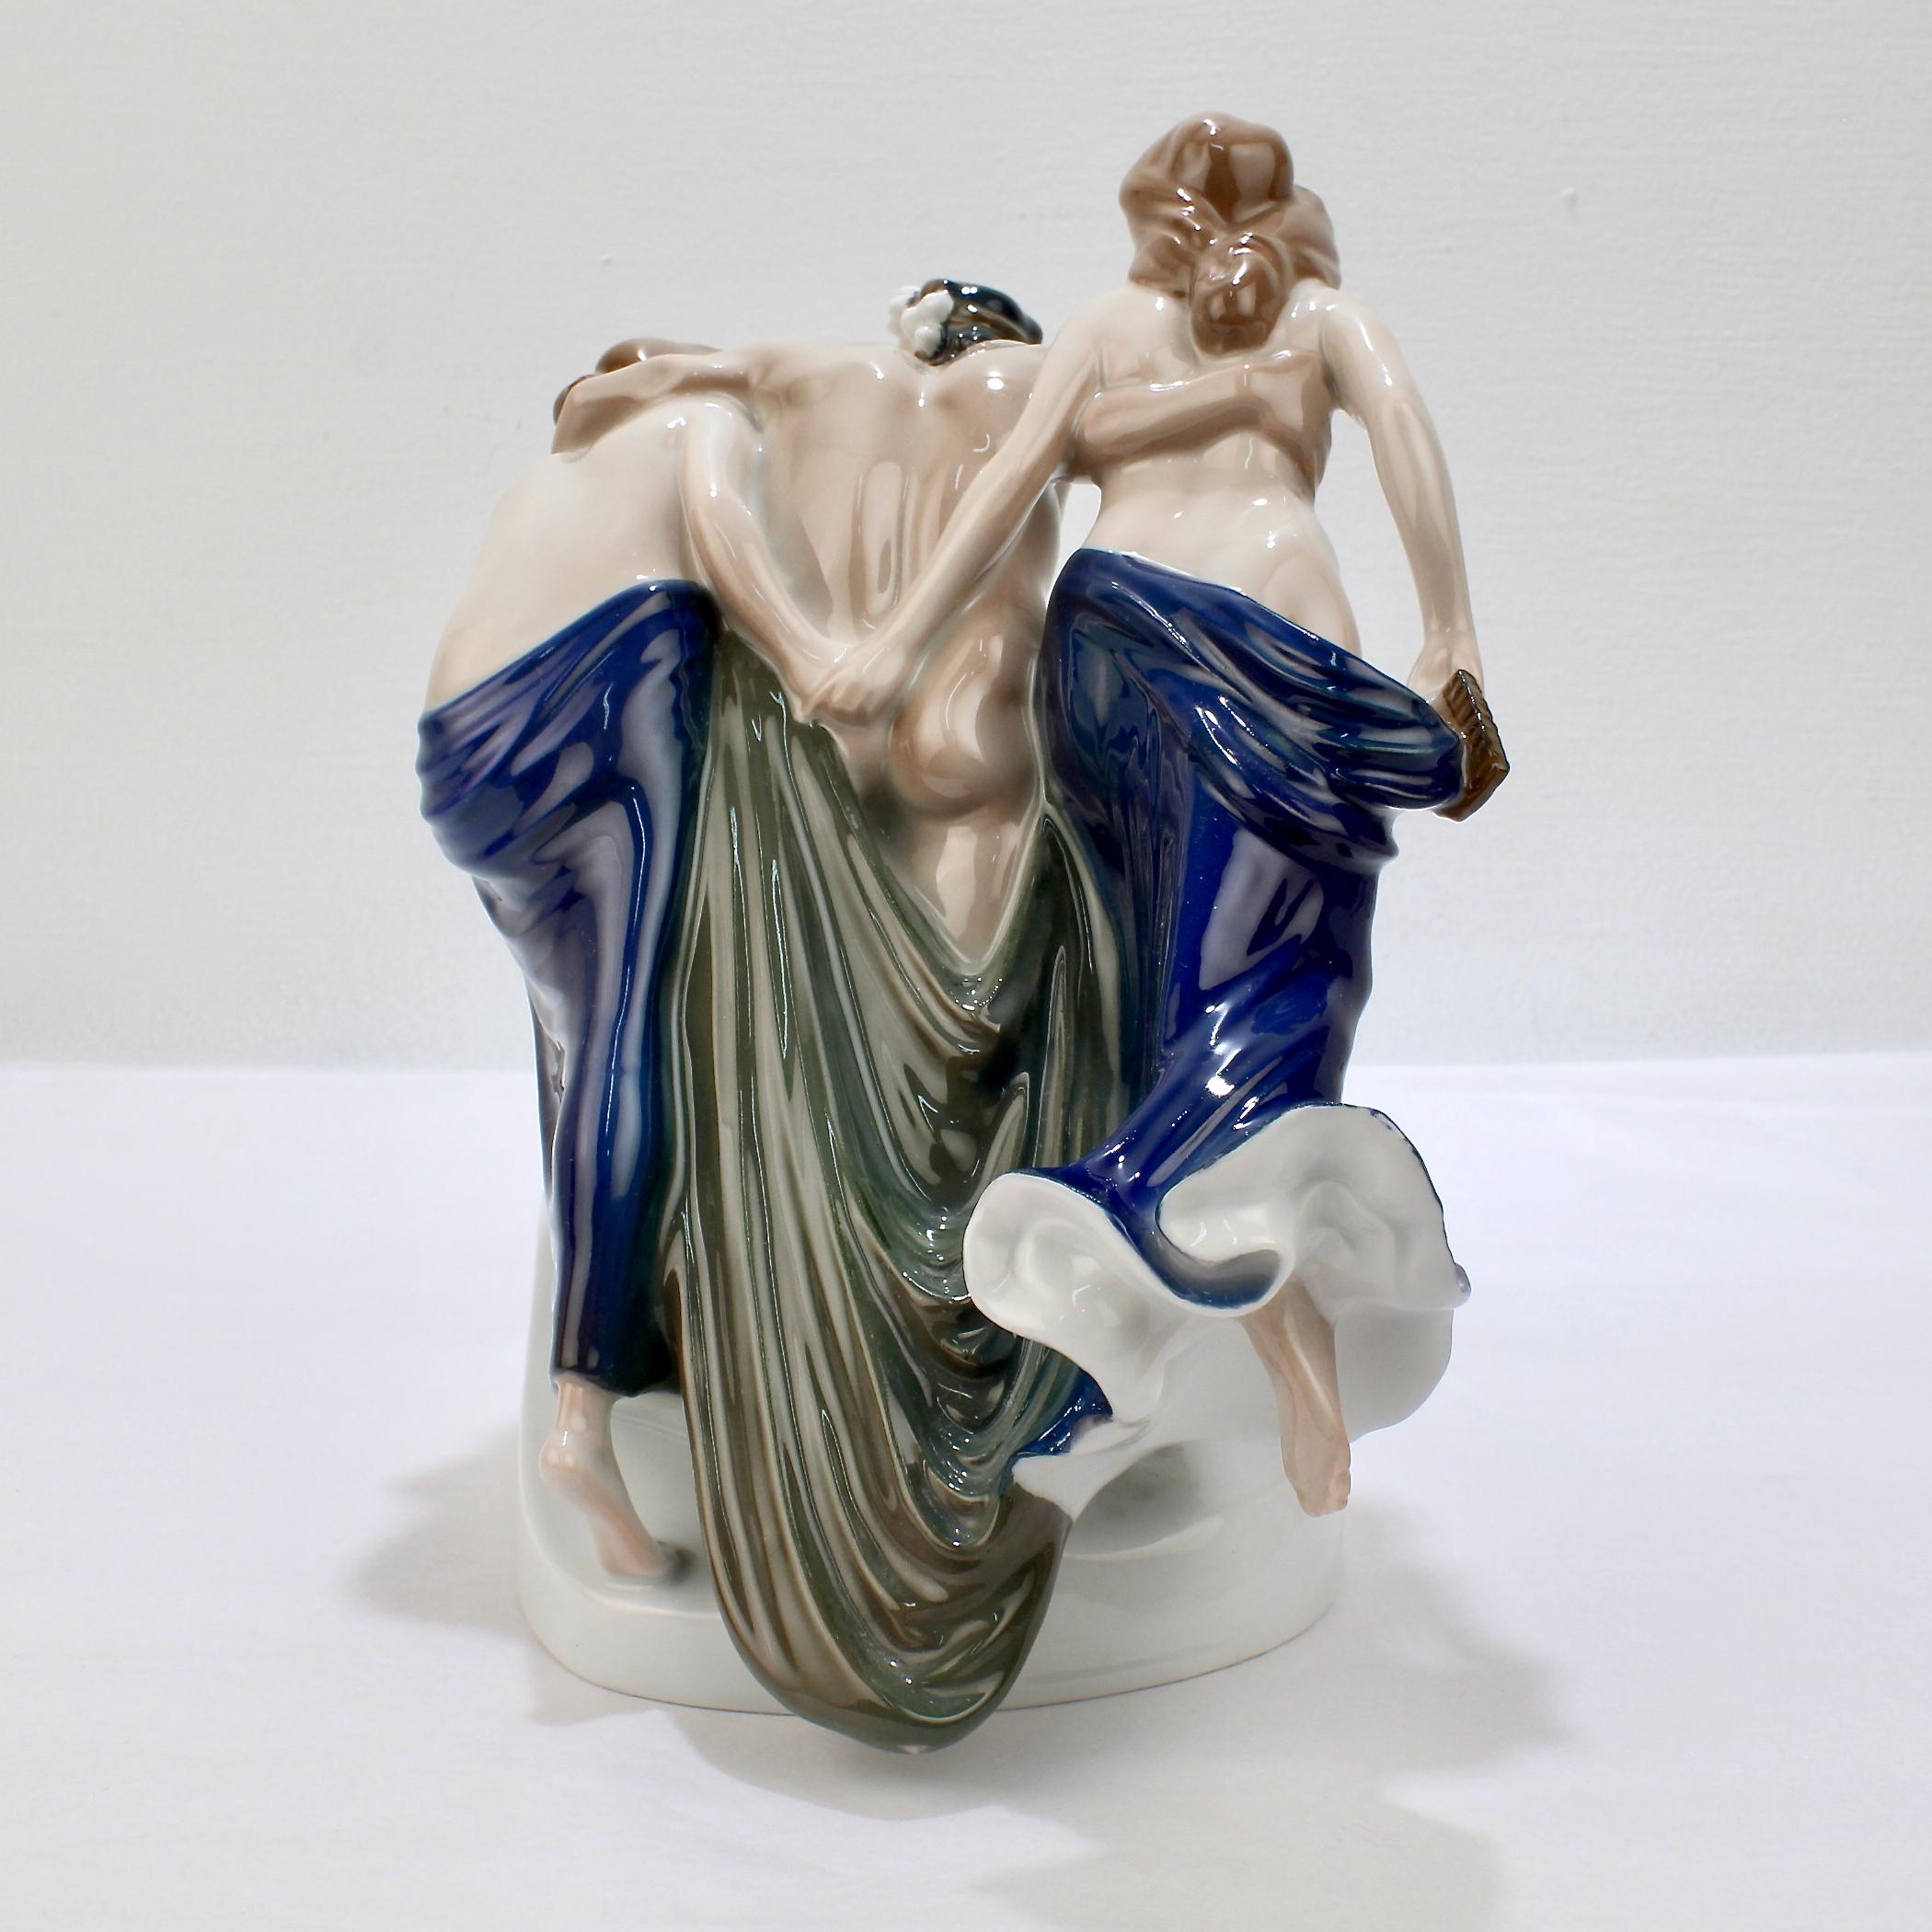 German Art Nouveau Rosenthal Porcelain Figurine of Storming Bacchantes by A. Cassmann For Sale